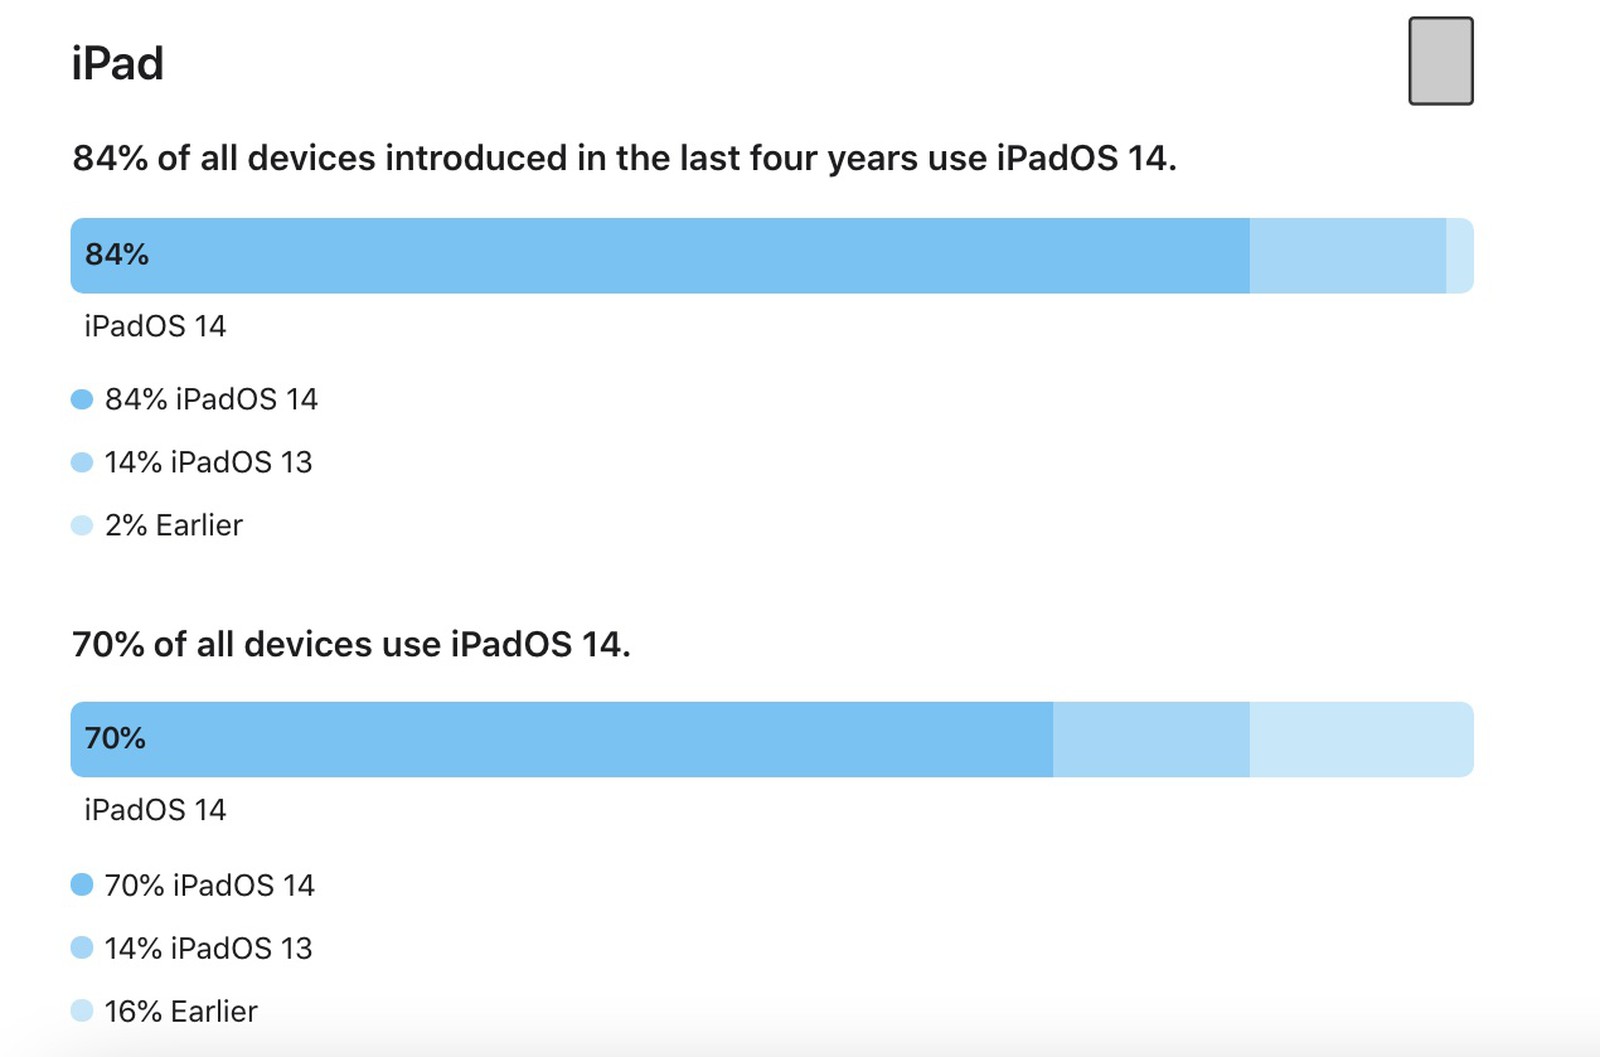 iOS 14 è installato sull’86% degli iPhone presentati negli ultimi quattro anni